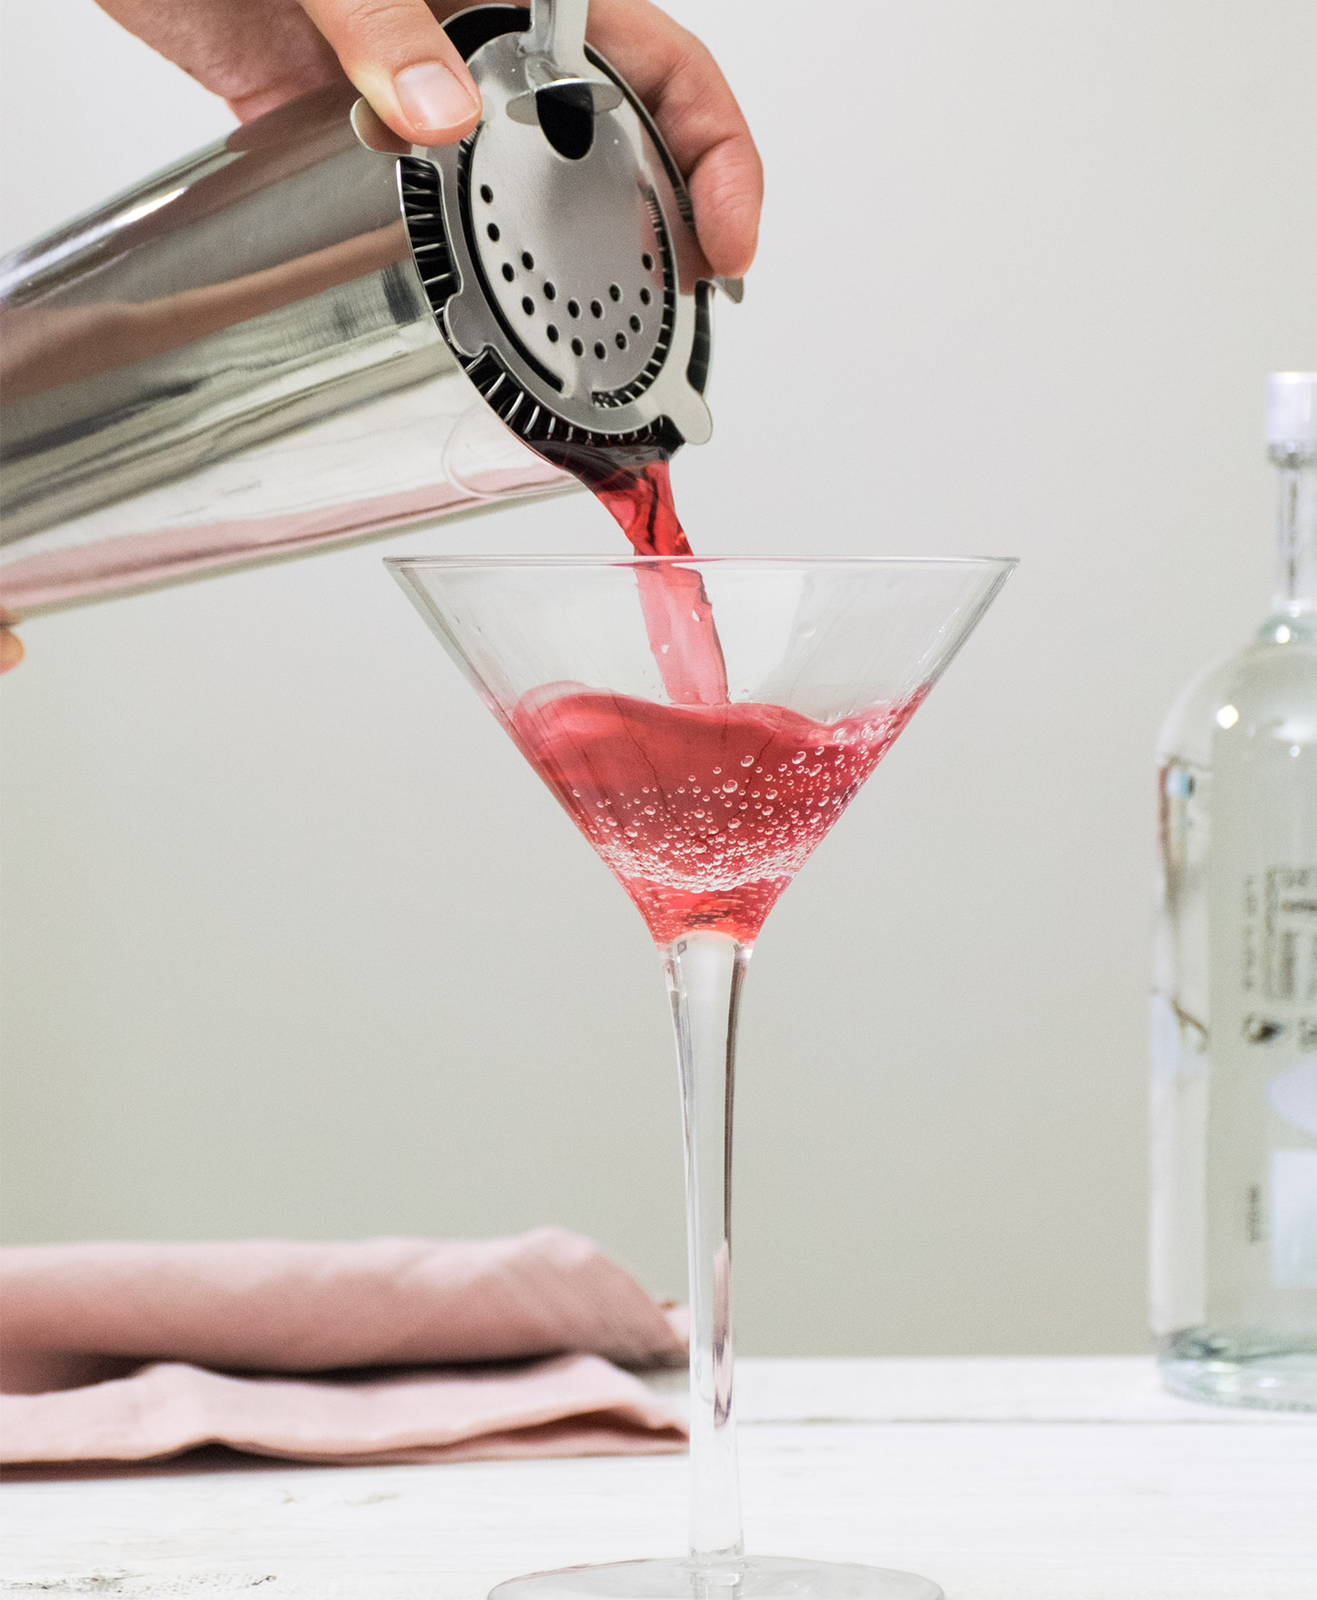 Une personne prépare un cocktail à base de vodka dans un shaker